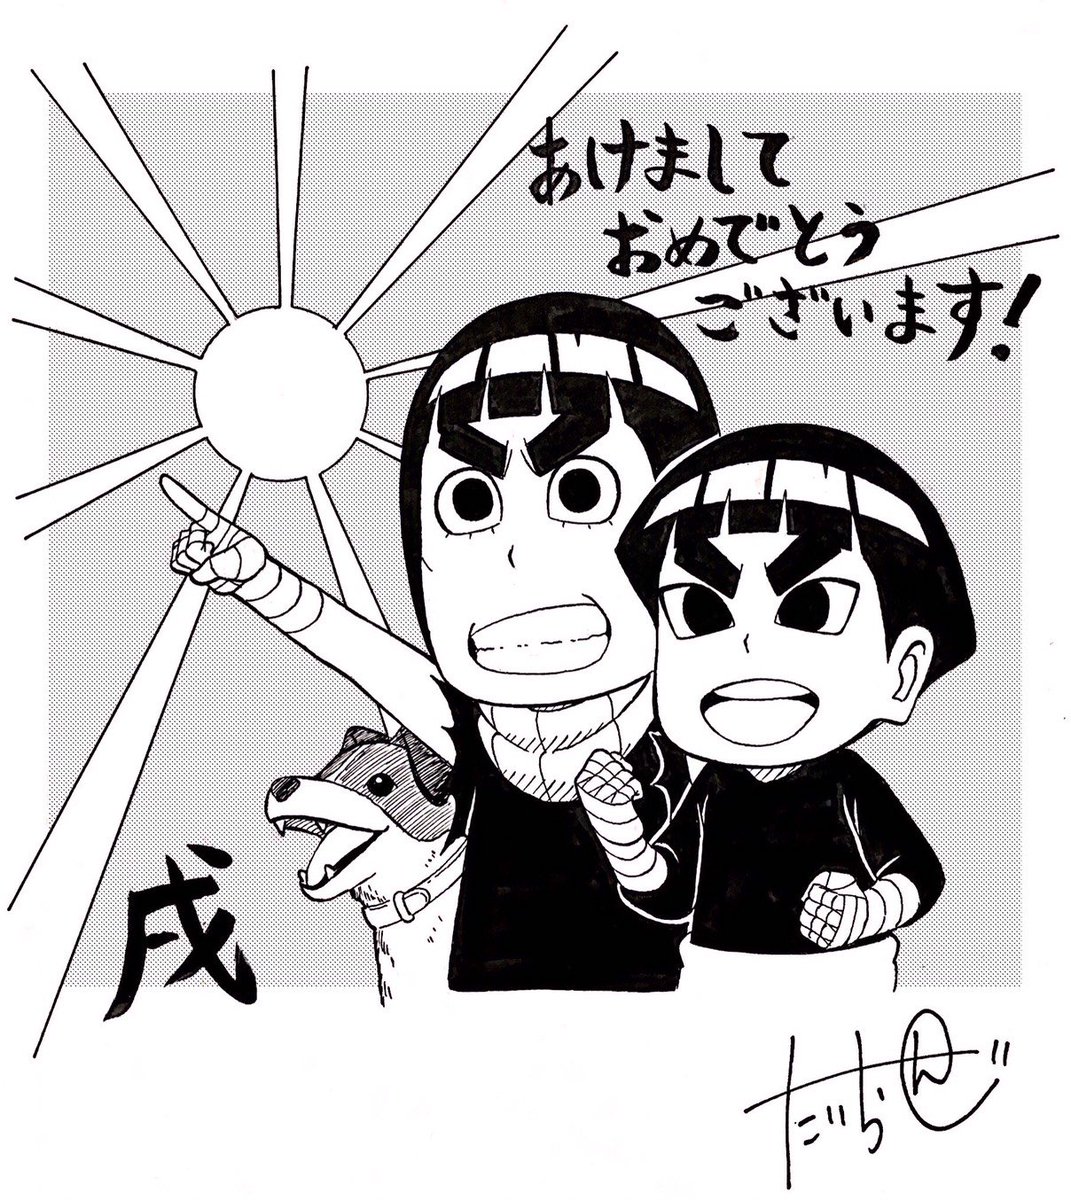 Naruto 声優 増川洋一さんに嫌がらせツイートを送り続けるアカウント Togetter